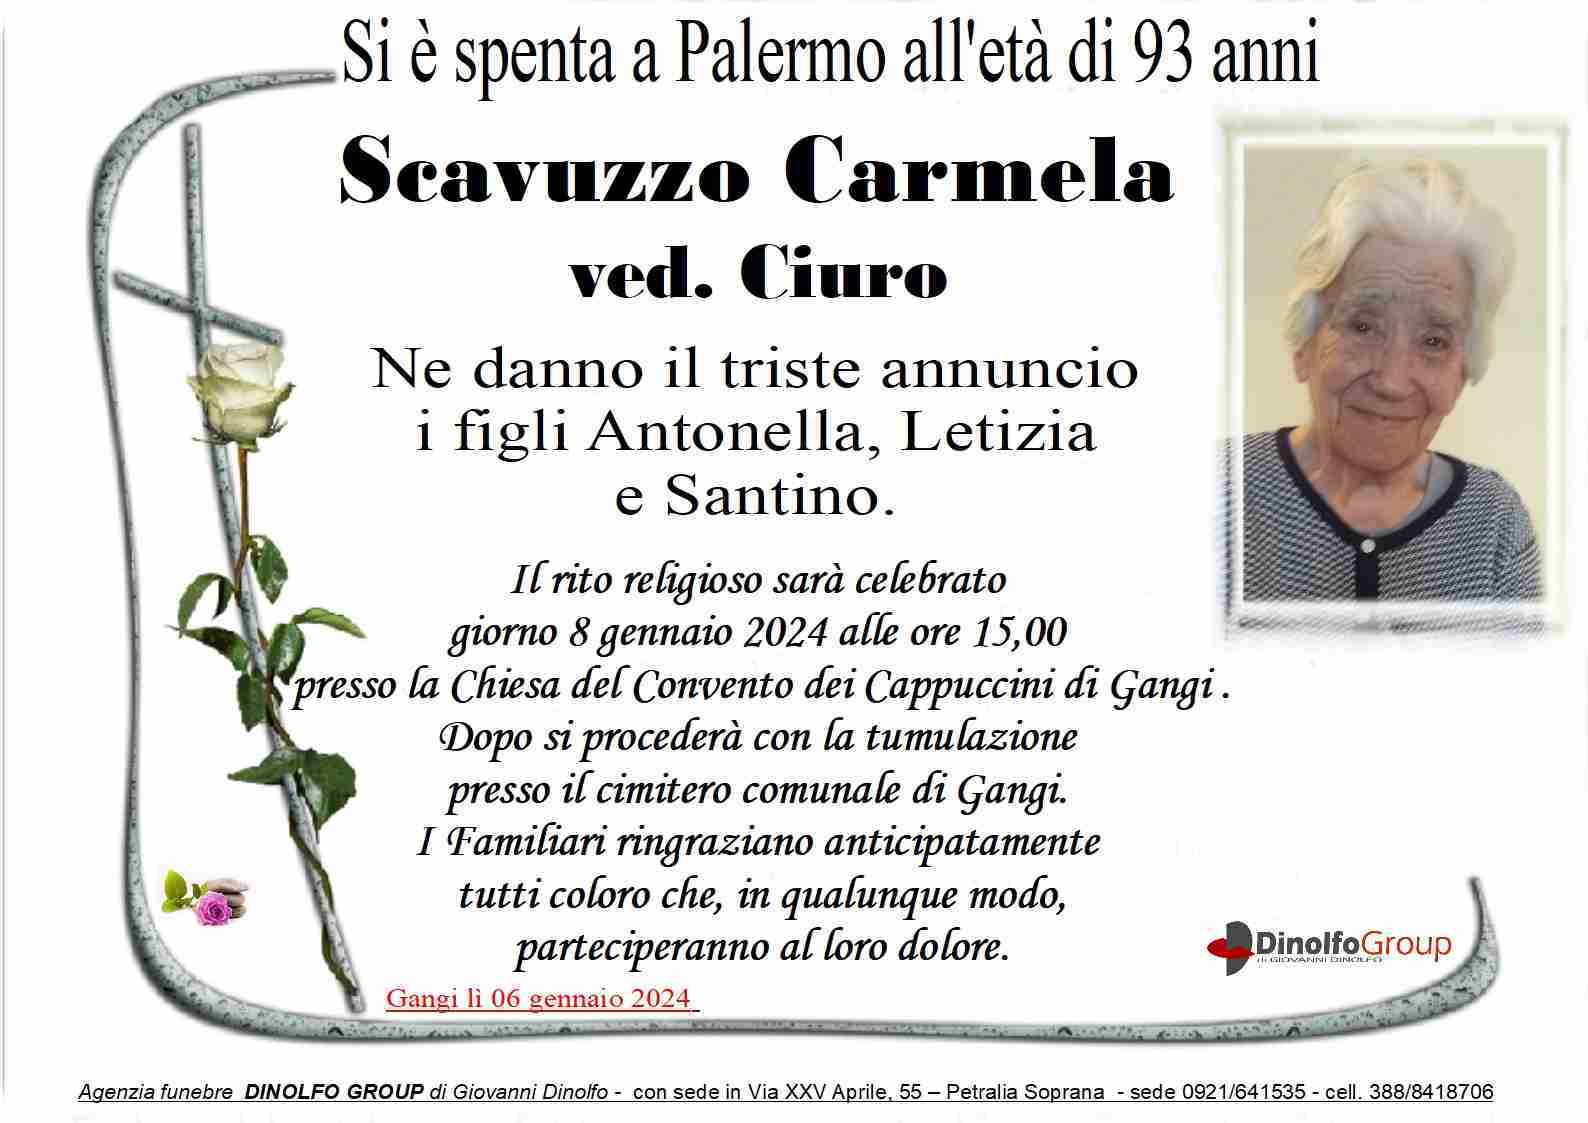 Carmela Scavuzzo